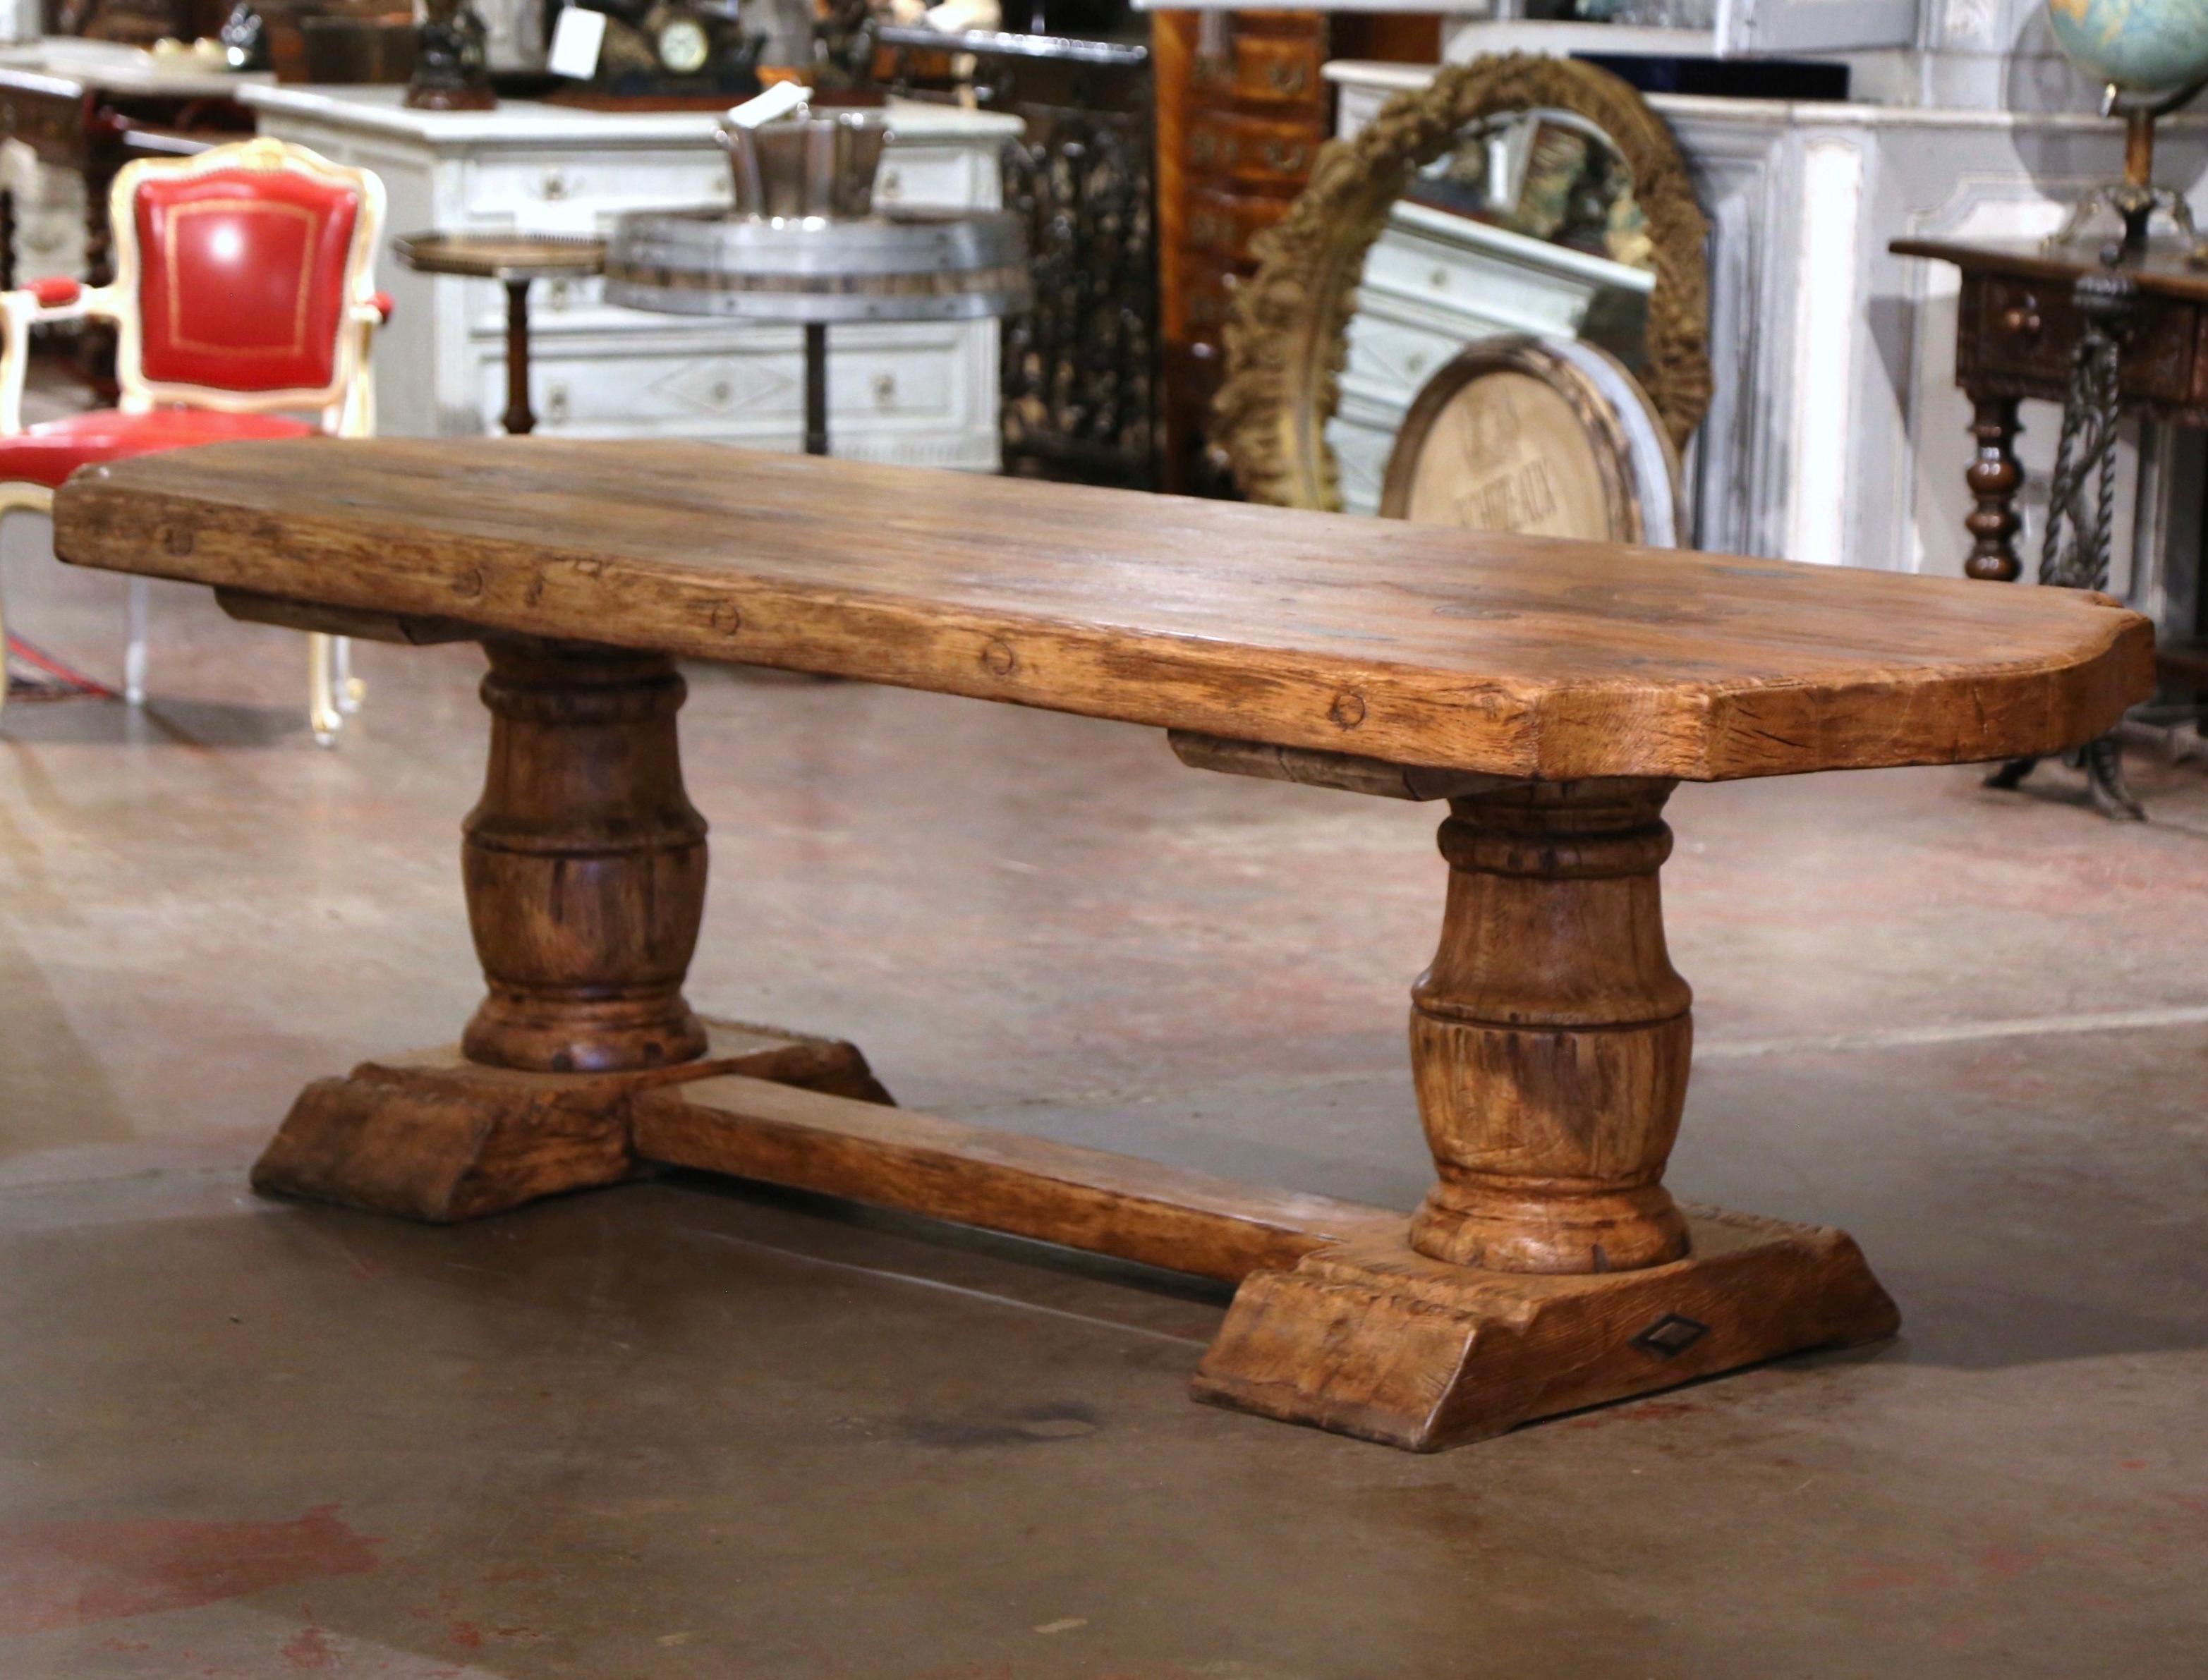 Dieser elegante antike Esstisch wurde um 1920 in der Normandie, Frankreich, hergestellt. Der rustikale Tisch aus massiver Eiche steht auf zwei massiven, geschnitzten balusterförmigen Stützbeinen, die mit einem geformten Schuhsockel enden und durch